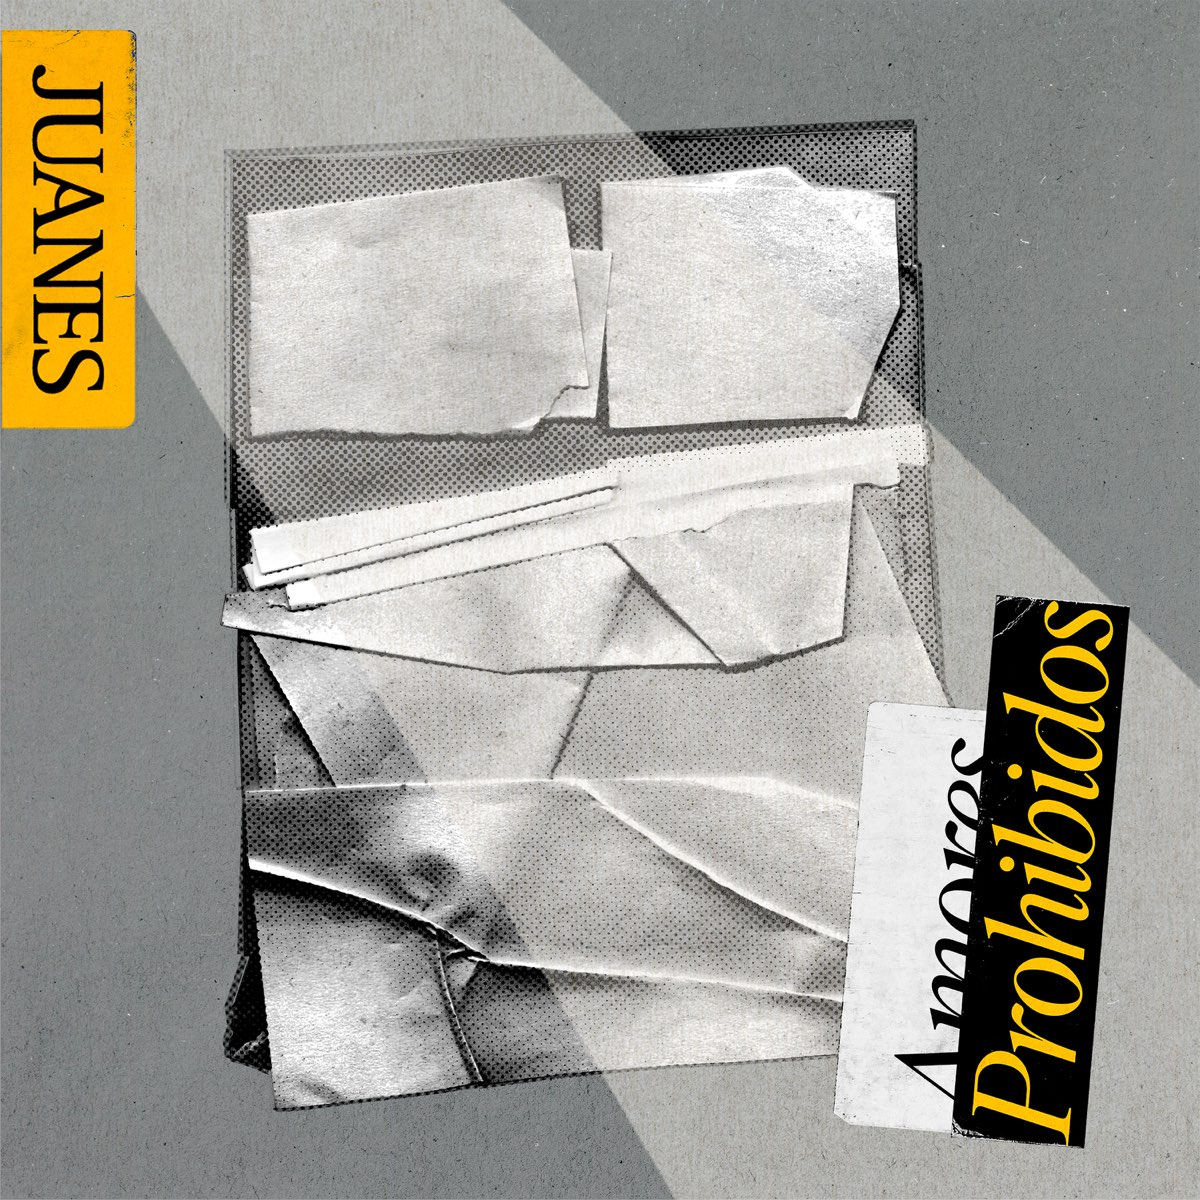 Juanes — Amores Prohibidos cover artwork